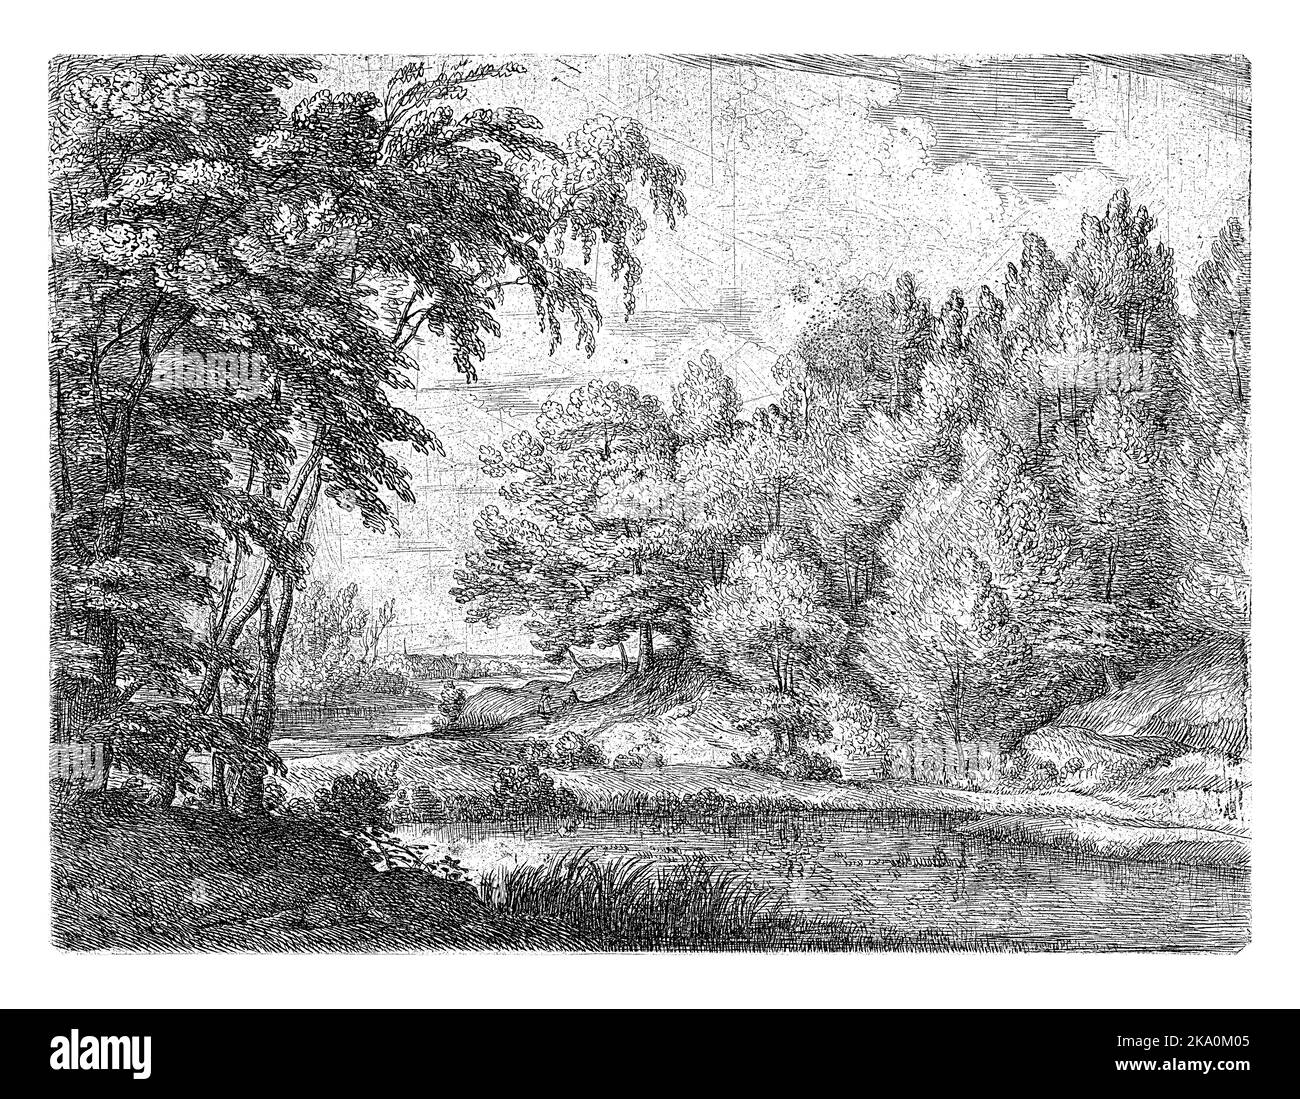 Paesaggio boscoso con un fiume serpeggiante, due persone sulla riva, un villaggio in lontananza. Foto Stock